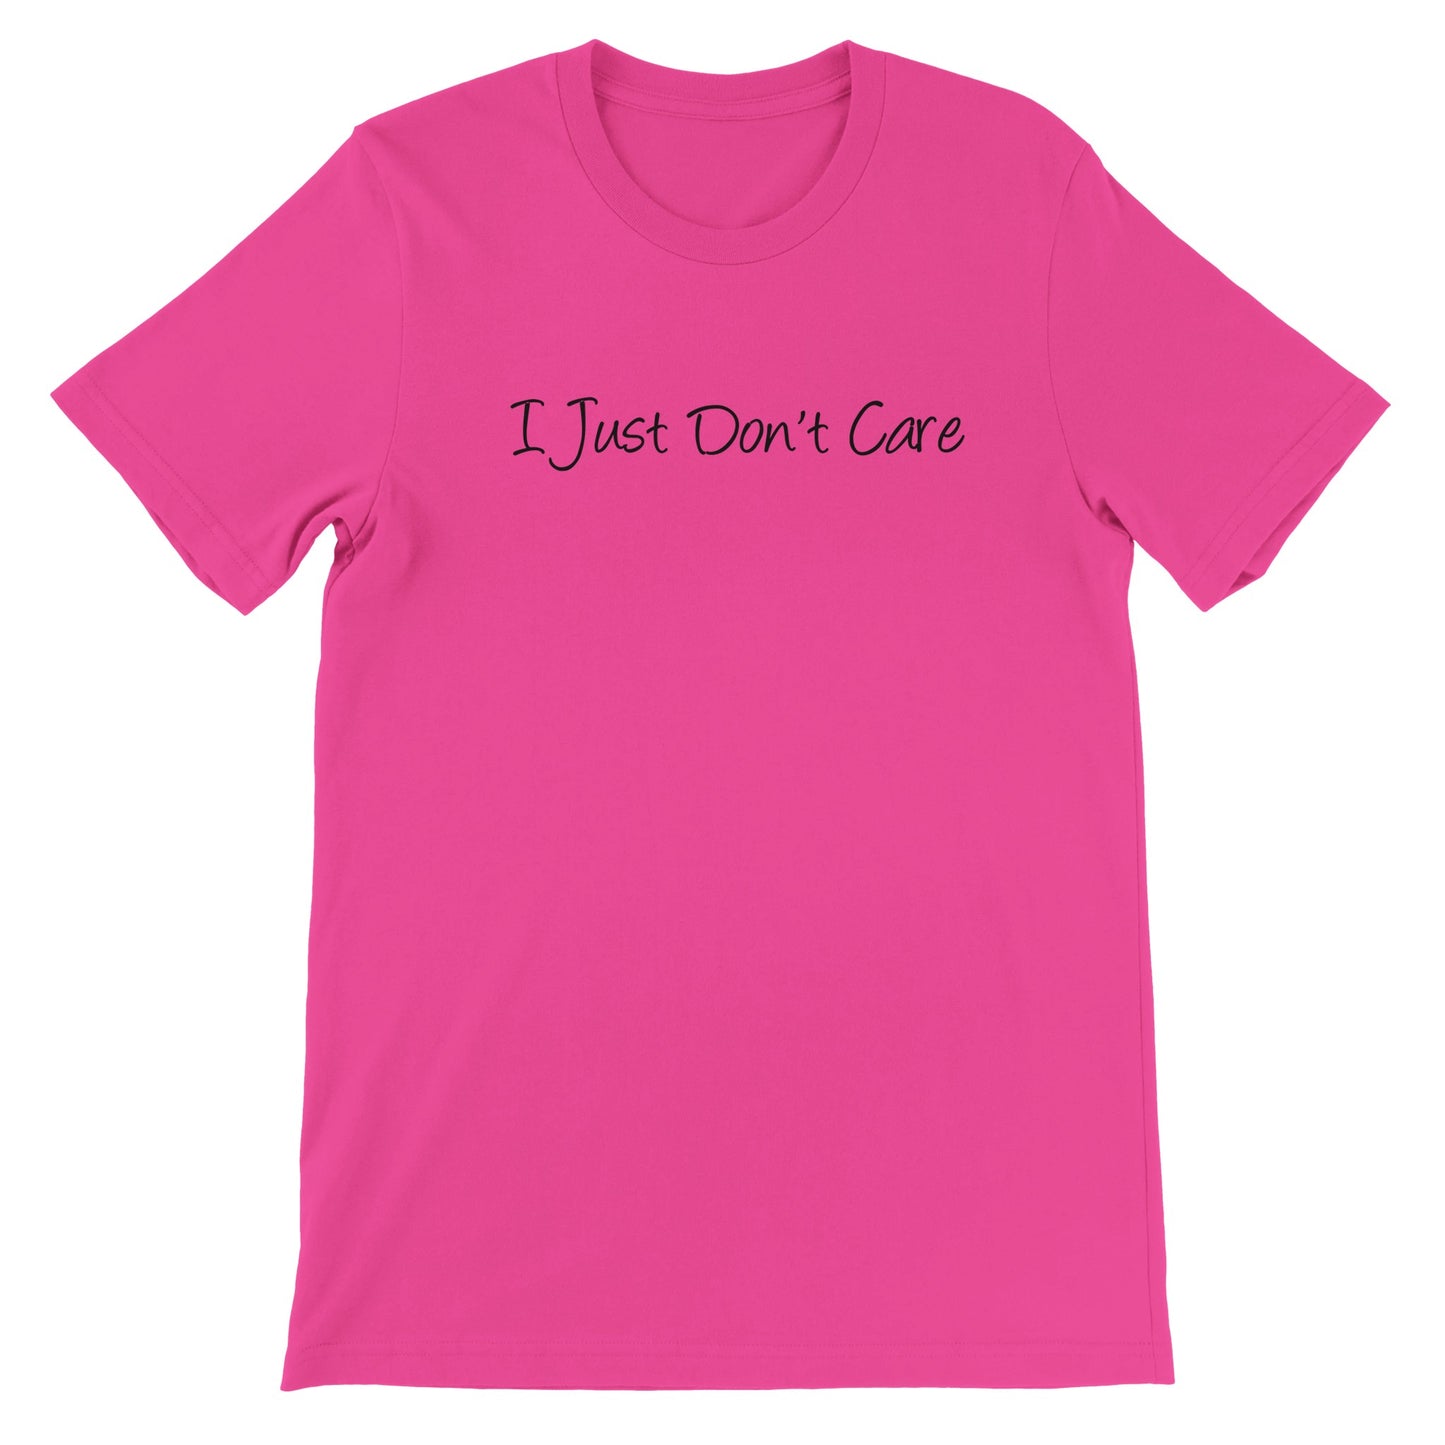 I Just Don't Care - Premium Unisex Crewneck T-shirt